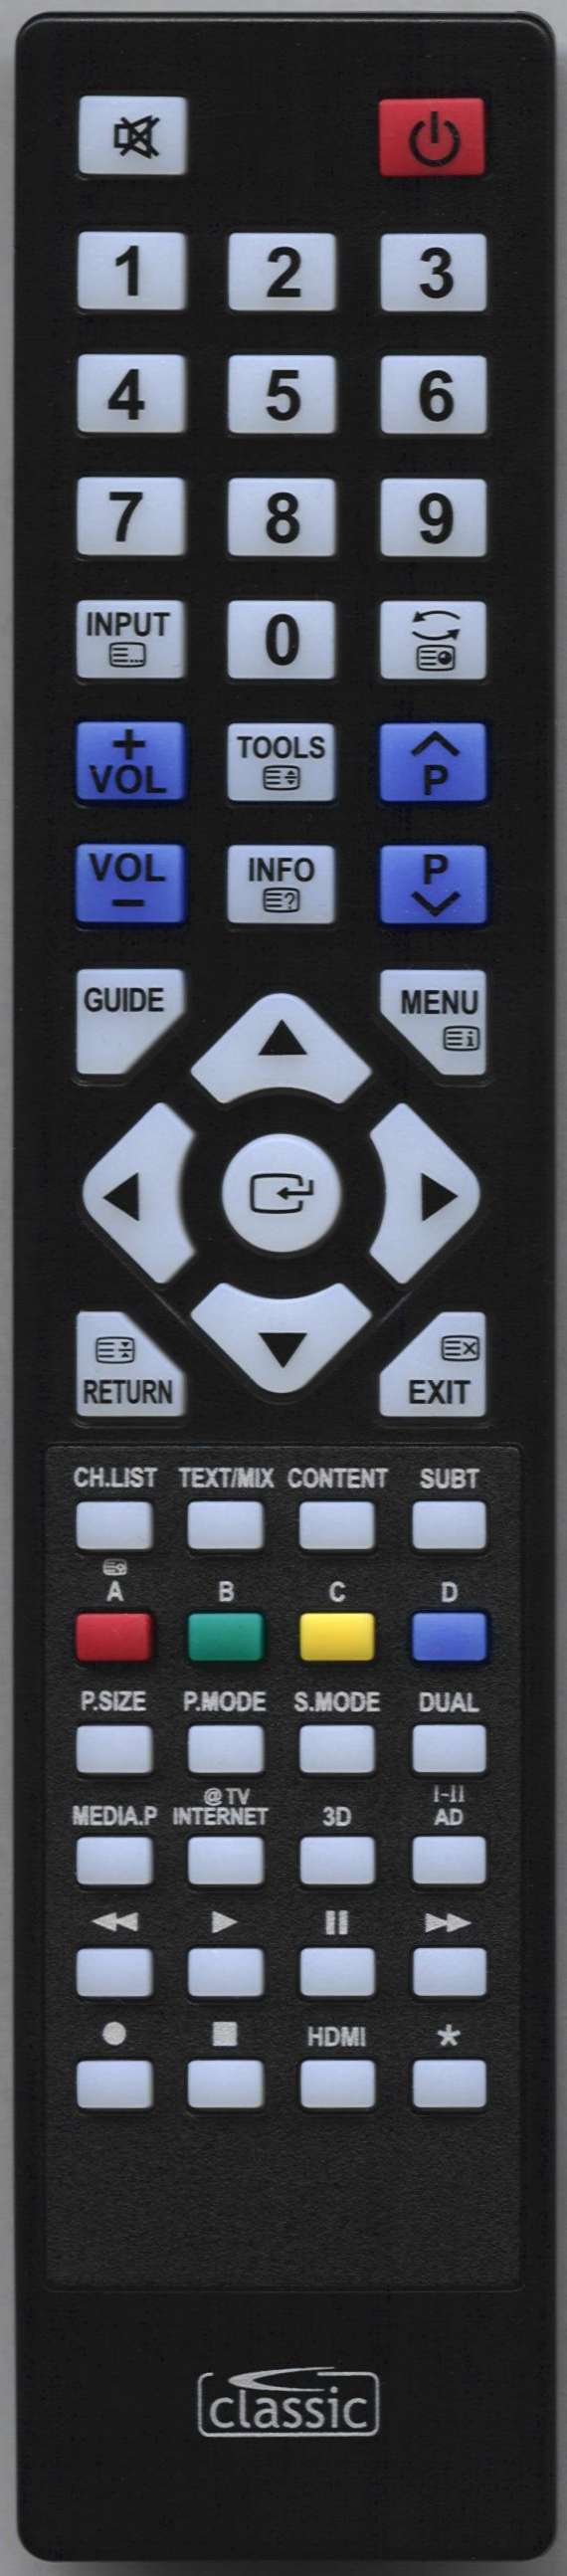 SAMSUNG - UE46C9000SK Remote Control